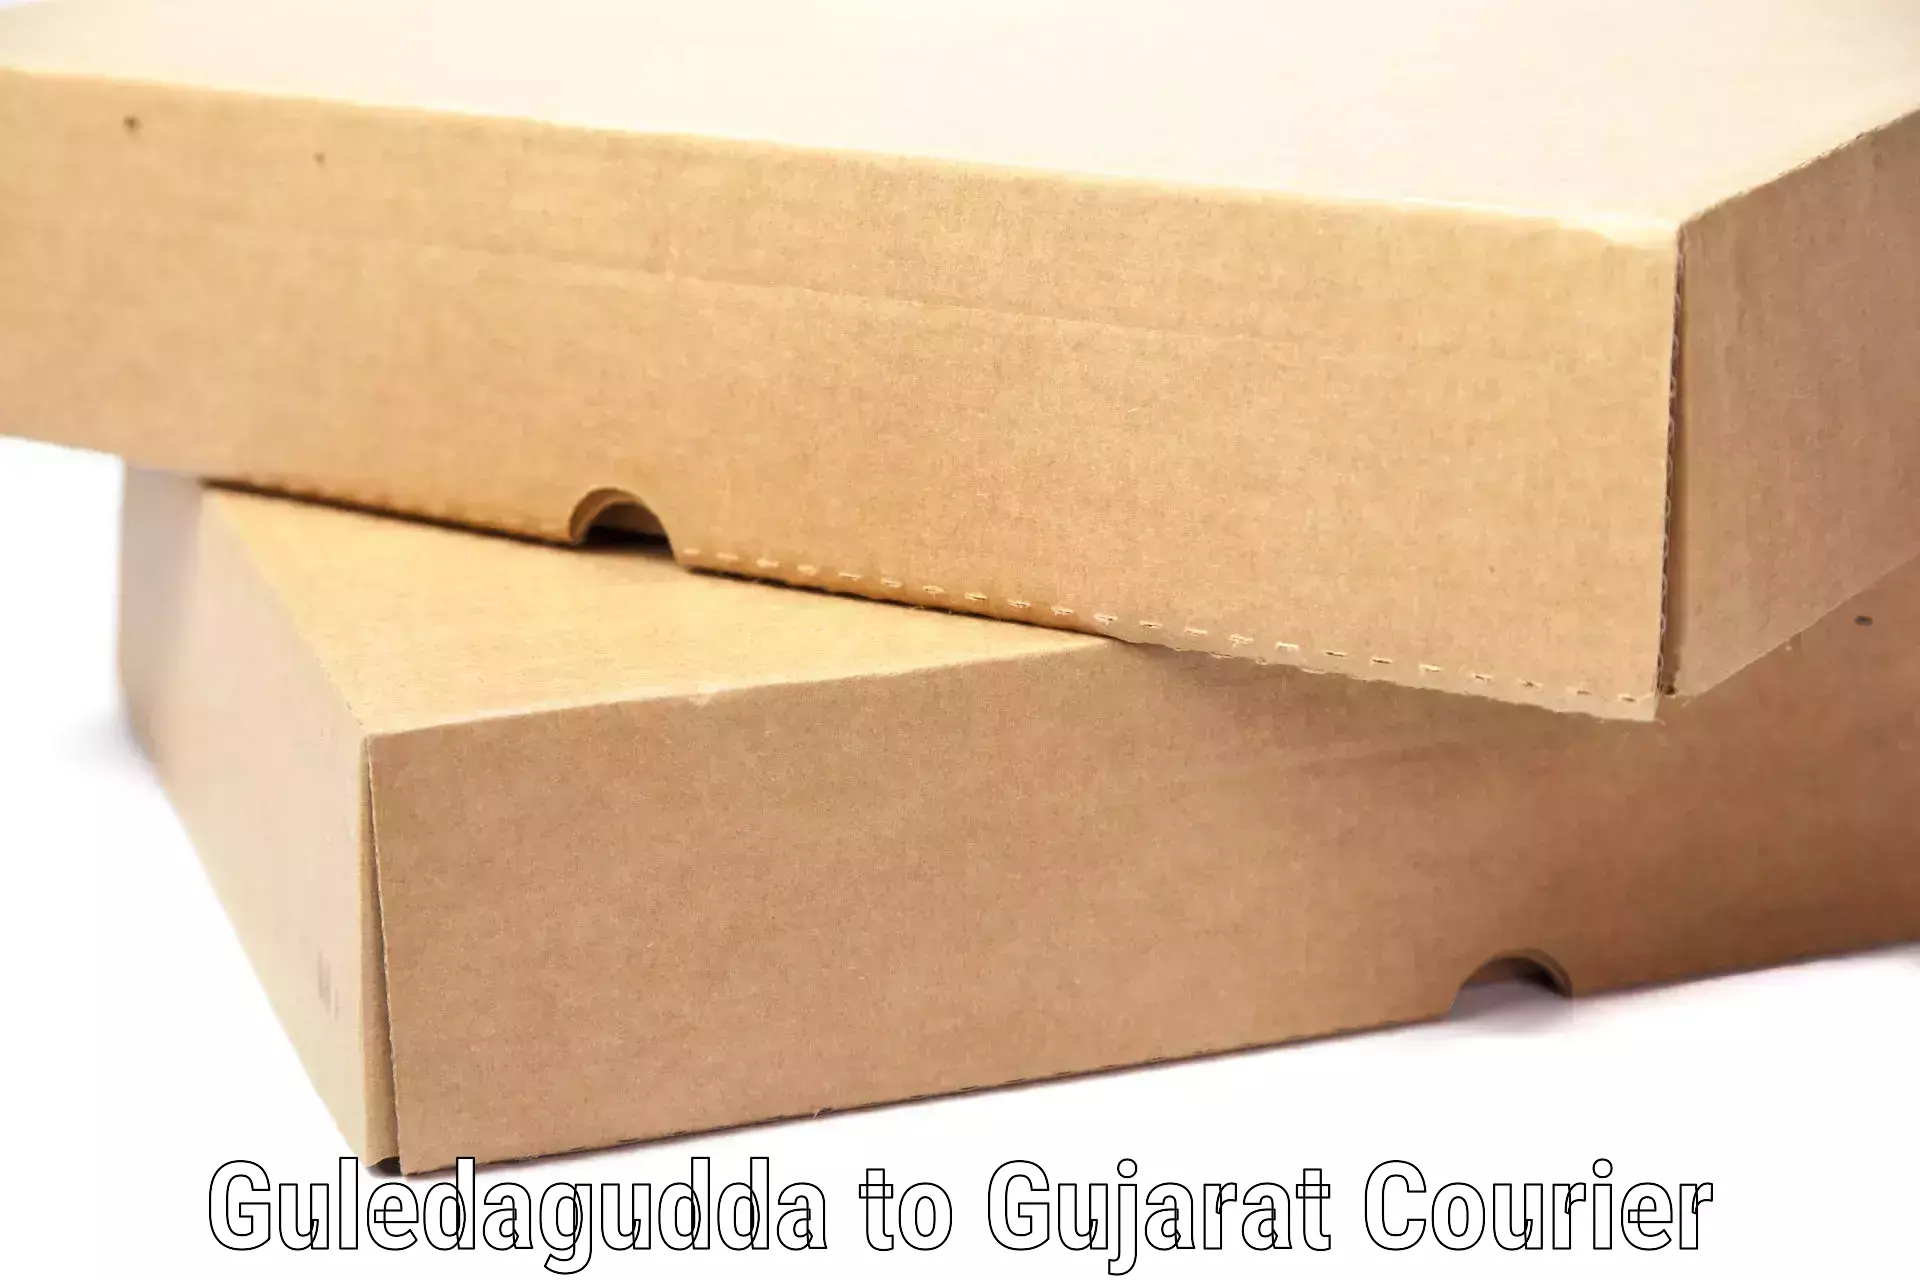 Scheduled baggage courier Guledagudda to Gujarat